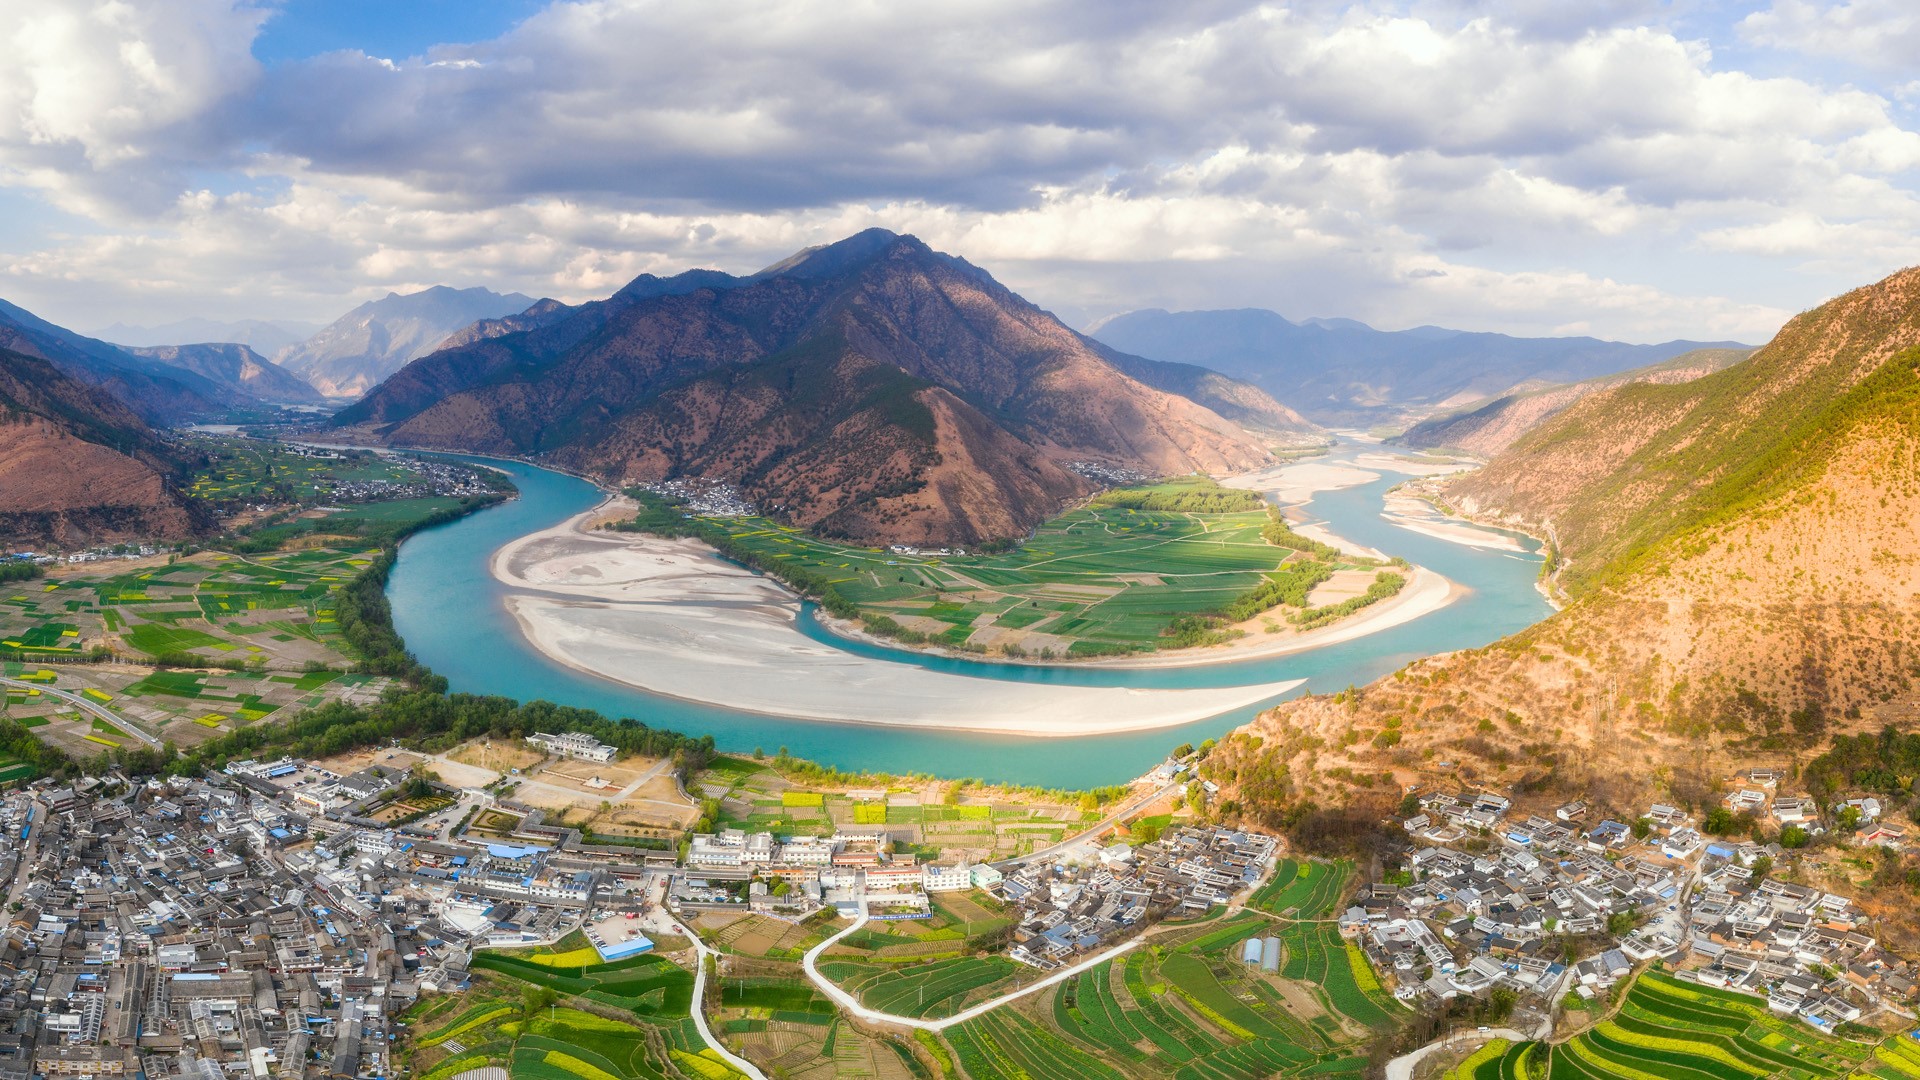 The First Bend of Yangtze River, Shiguzhen near Lijiang, Yunnan, China. Windows 10 Spotlight Image